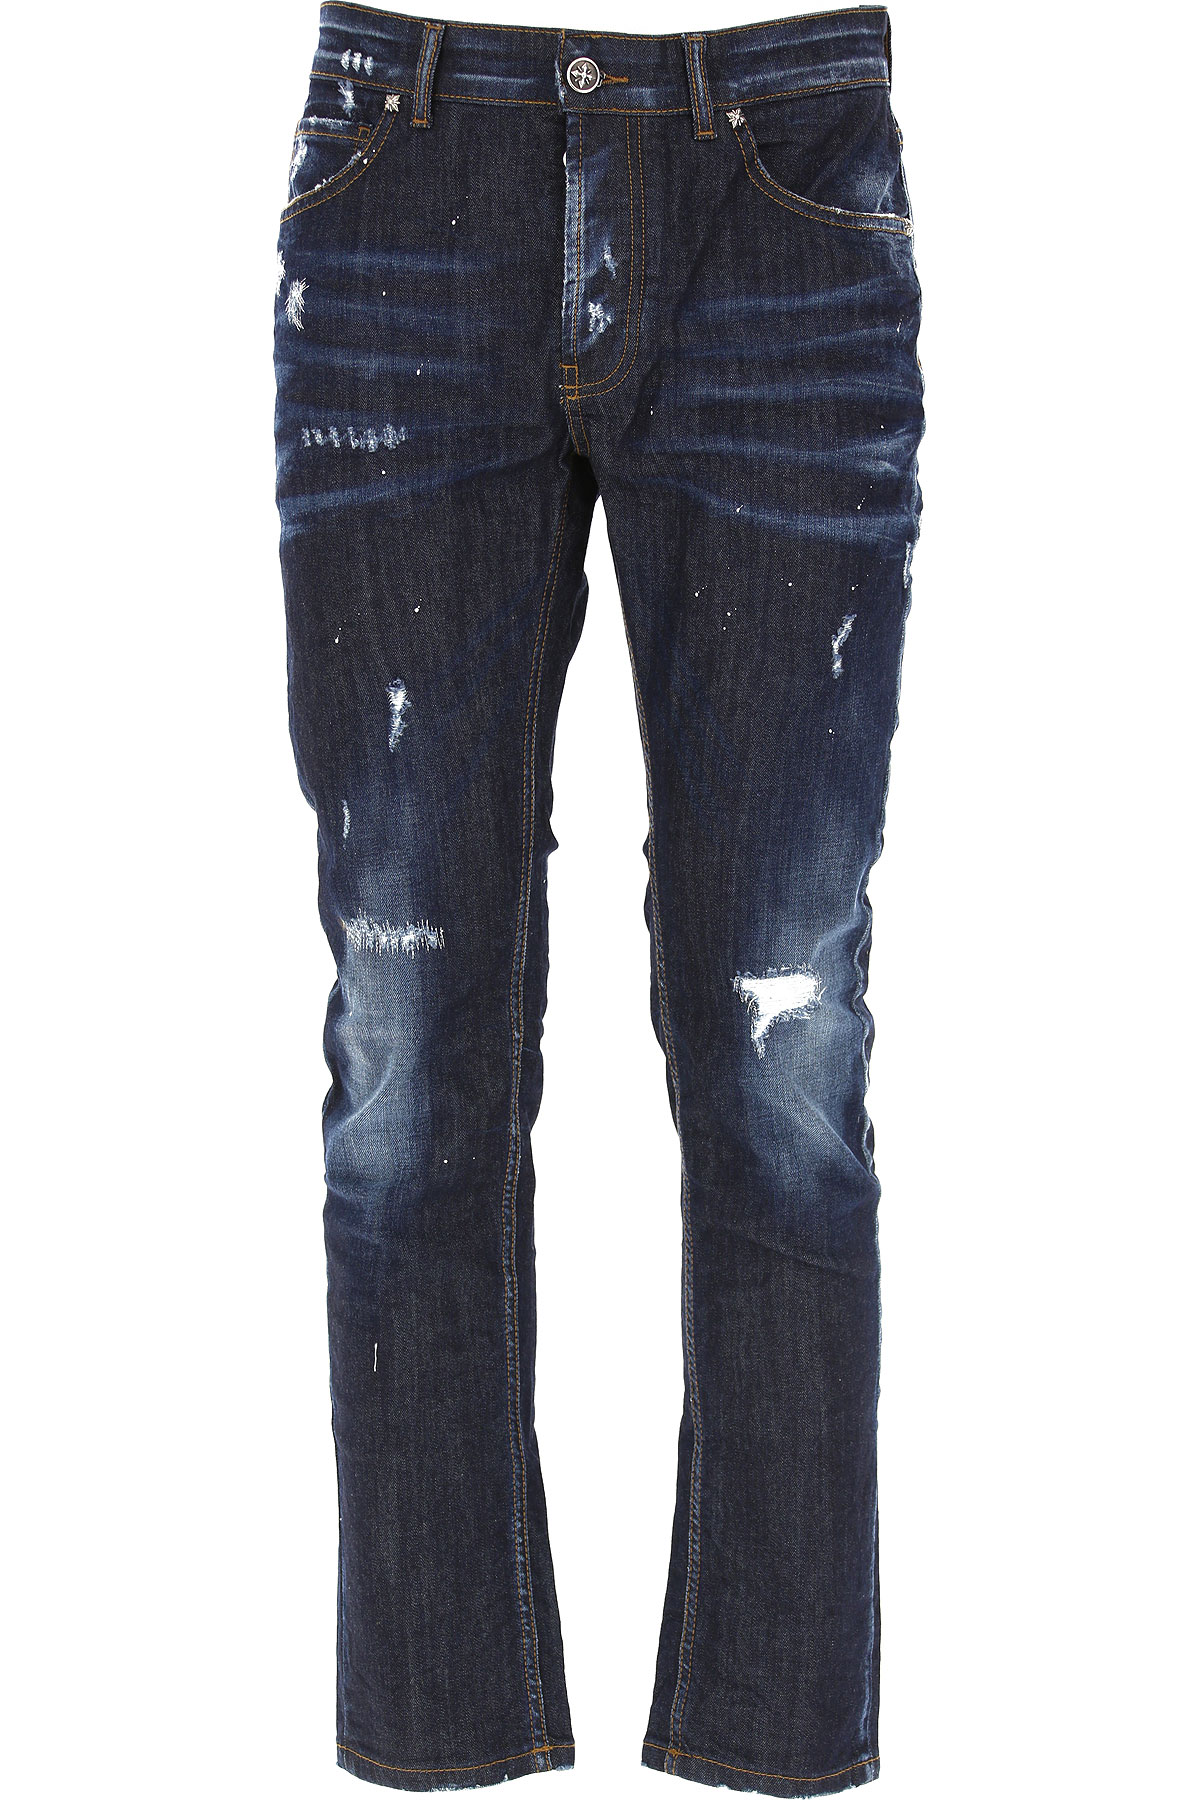 Richmond Jeans, Bluejeans, Denim Jeans für Herren Günstig im Sale, Dunkelblau, Baumwolle, 2017, 46 52